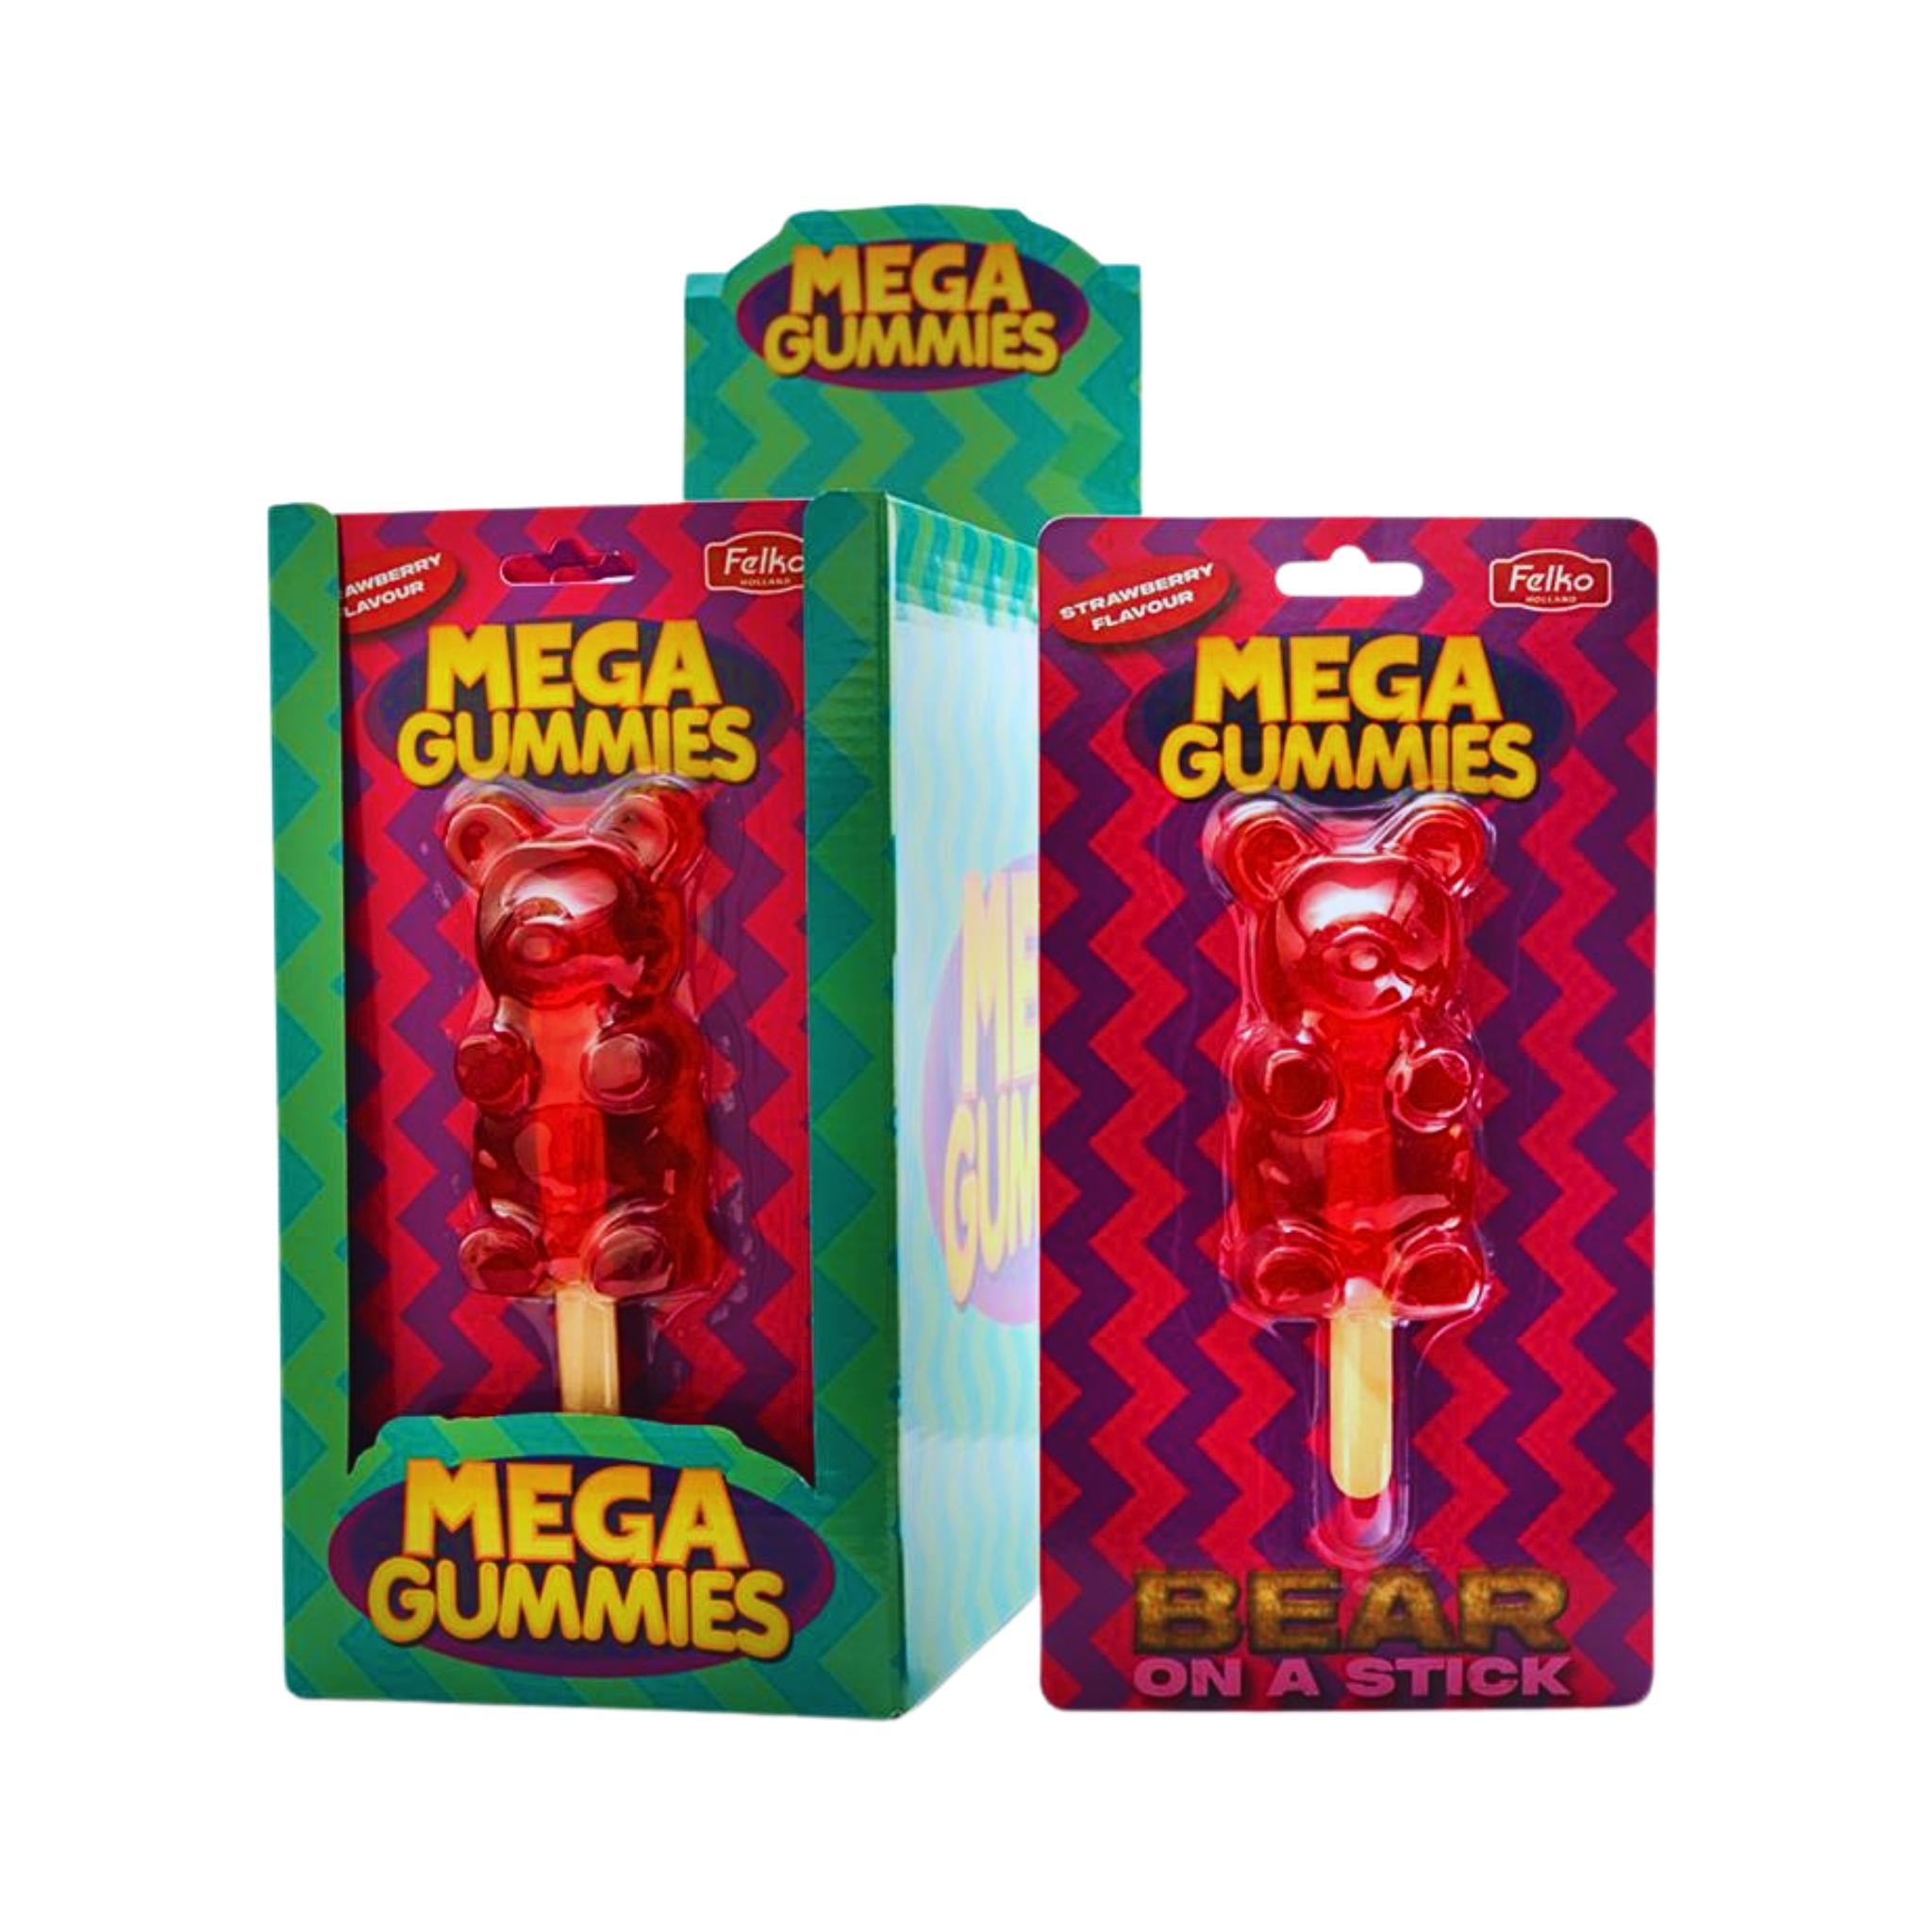 Mega Gummies Bear On A Stick (XL) - 120g